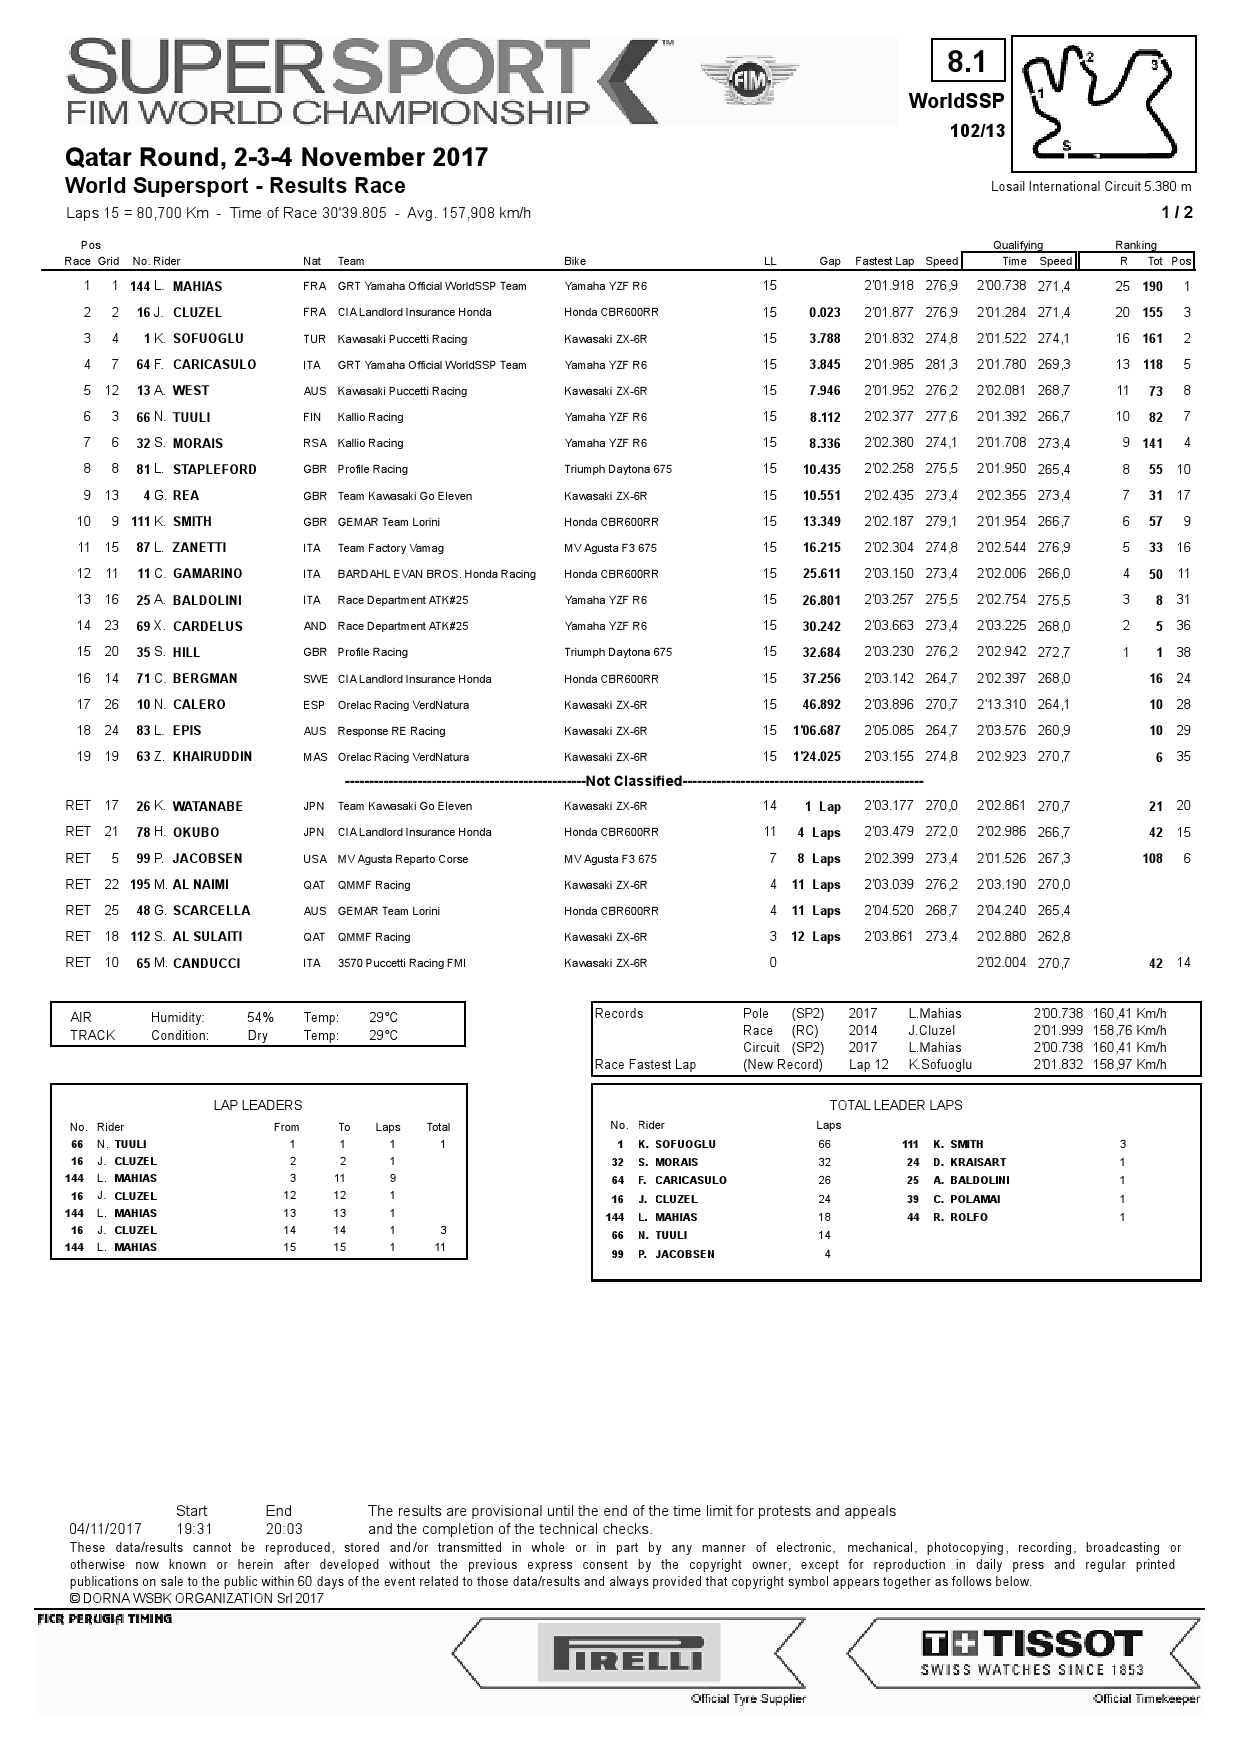 Результаты финального этапа World Supersport в Катаре, Losail International Circuit, 4.11.2017